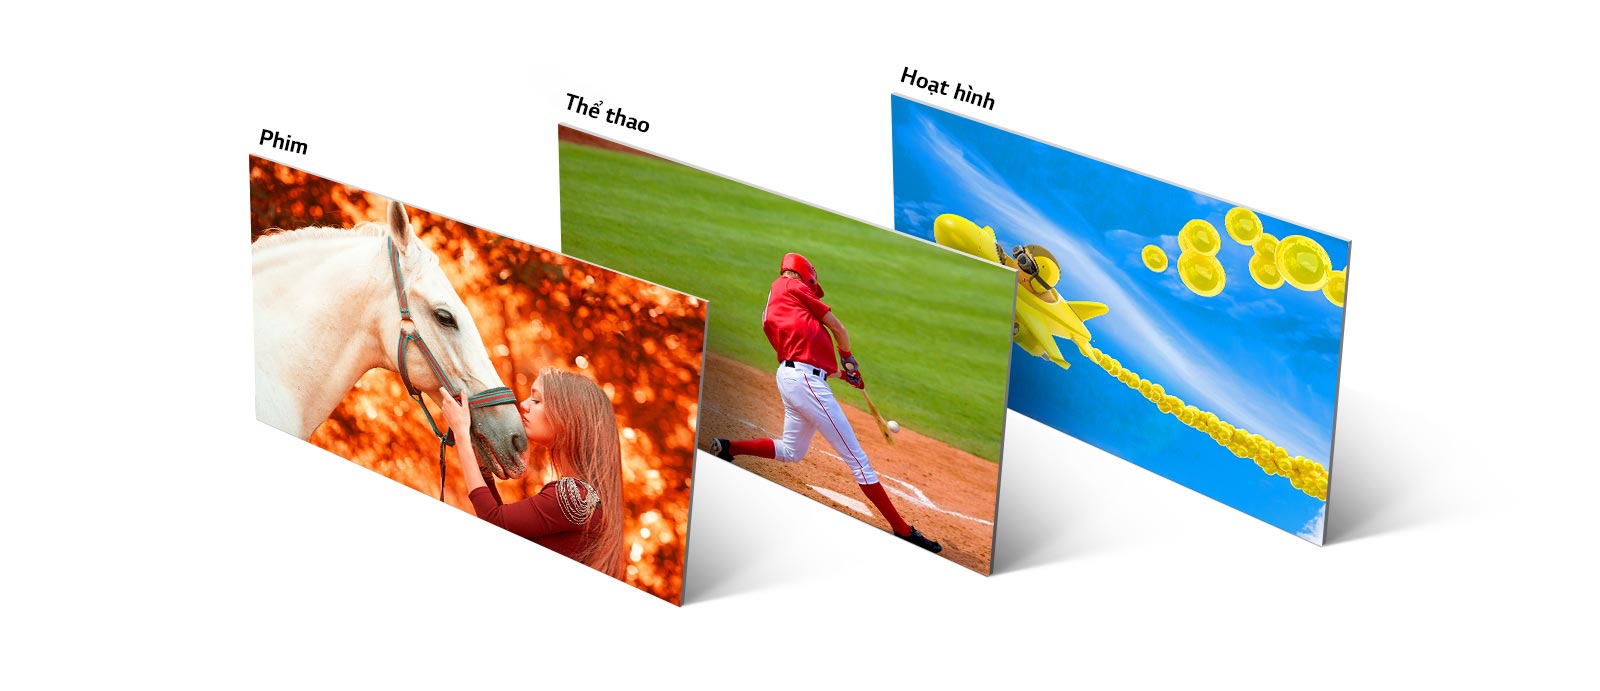 Ba hình ảnh, một hình hiển thị cô gái đang hôn một chú ngựa, hình thứ hai là một cầu thủ bóng chày đánh trúng quả bóng, và hình thứ ba hiển thị một chiếc máy bay hoạt hình đang bay trên bầu trời.